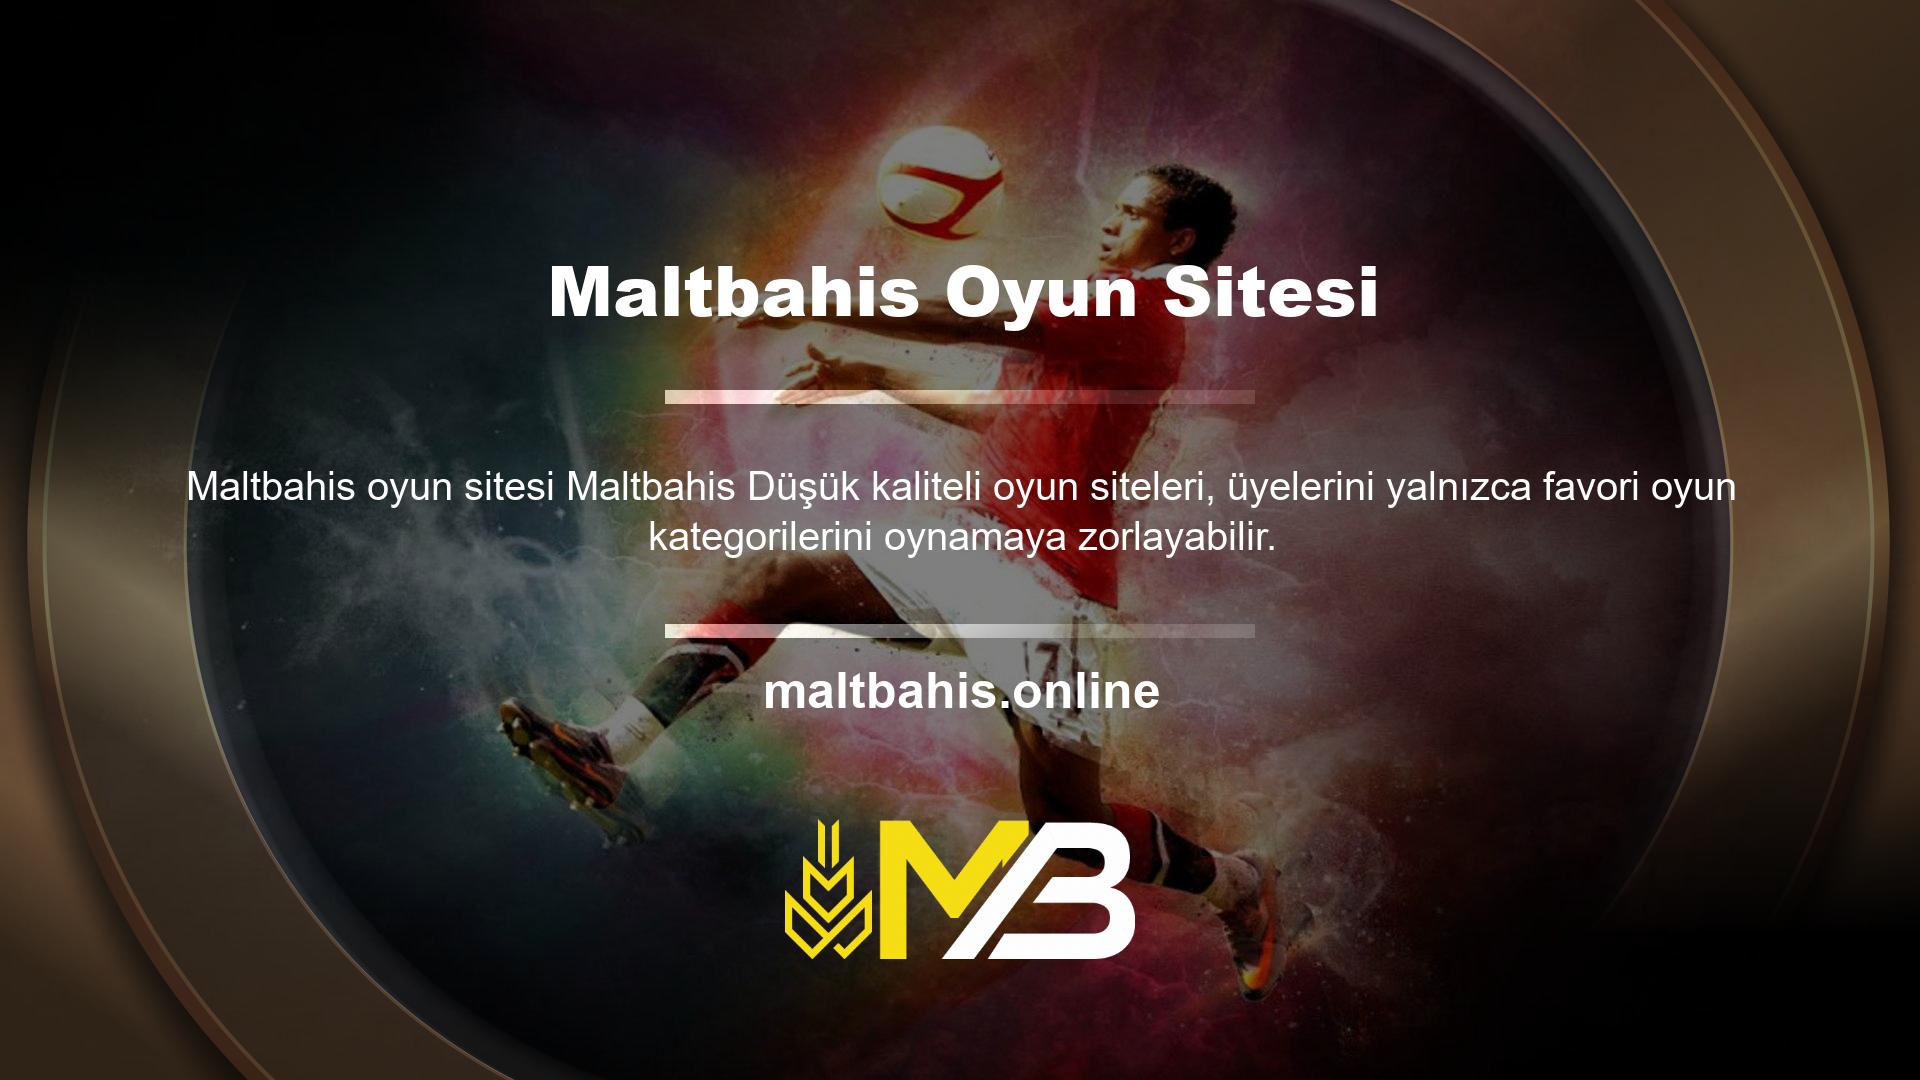 Maltbahis, geçici sözleşmelerin bir parçası olarak üyeleri serbest bırakacak